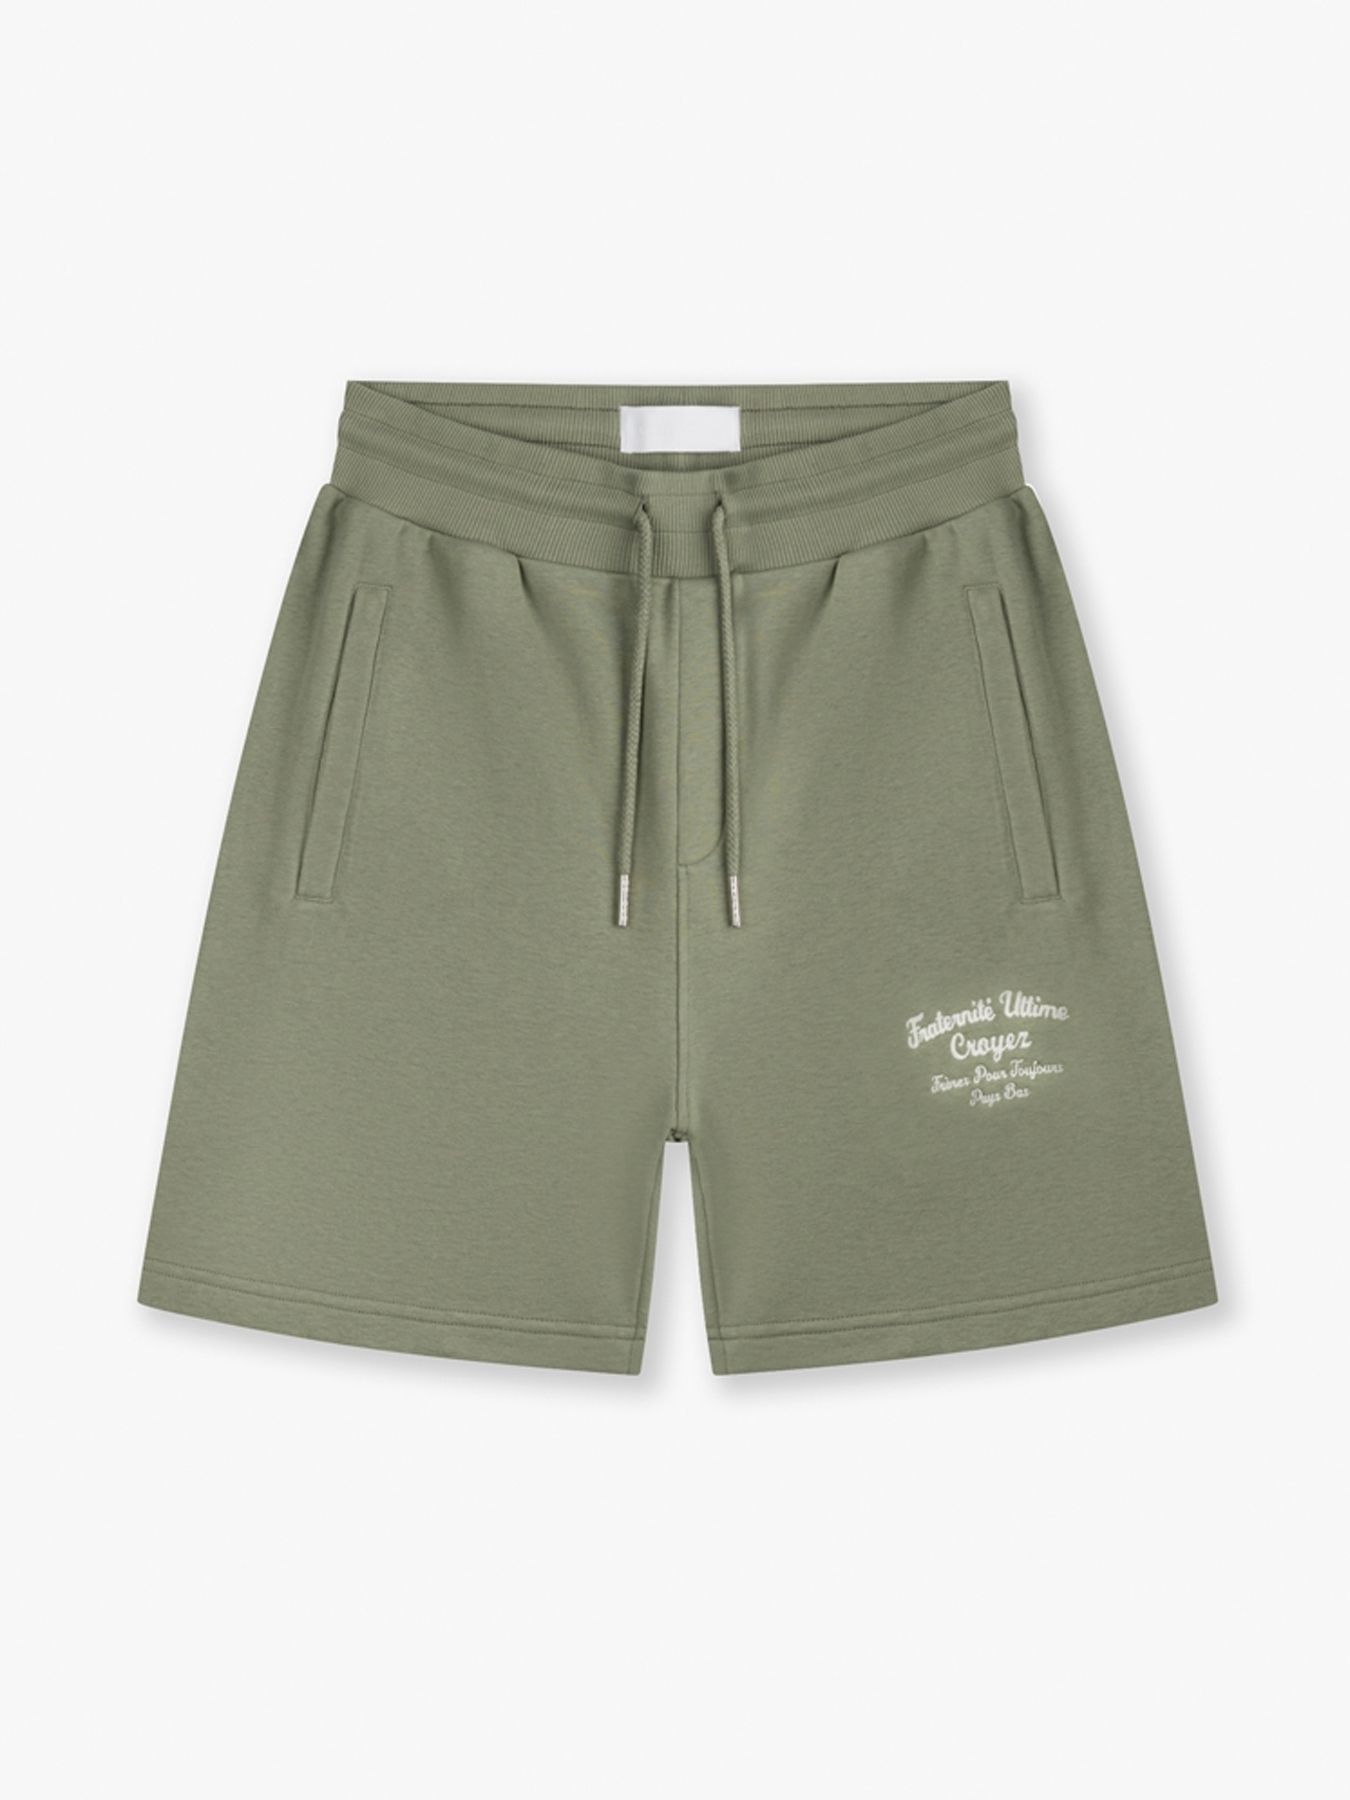 Croyez Fraternite shorts Washed Olive 00108226-173